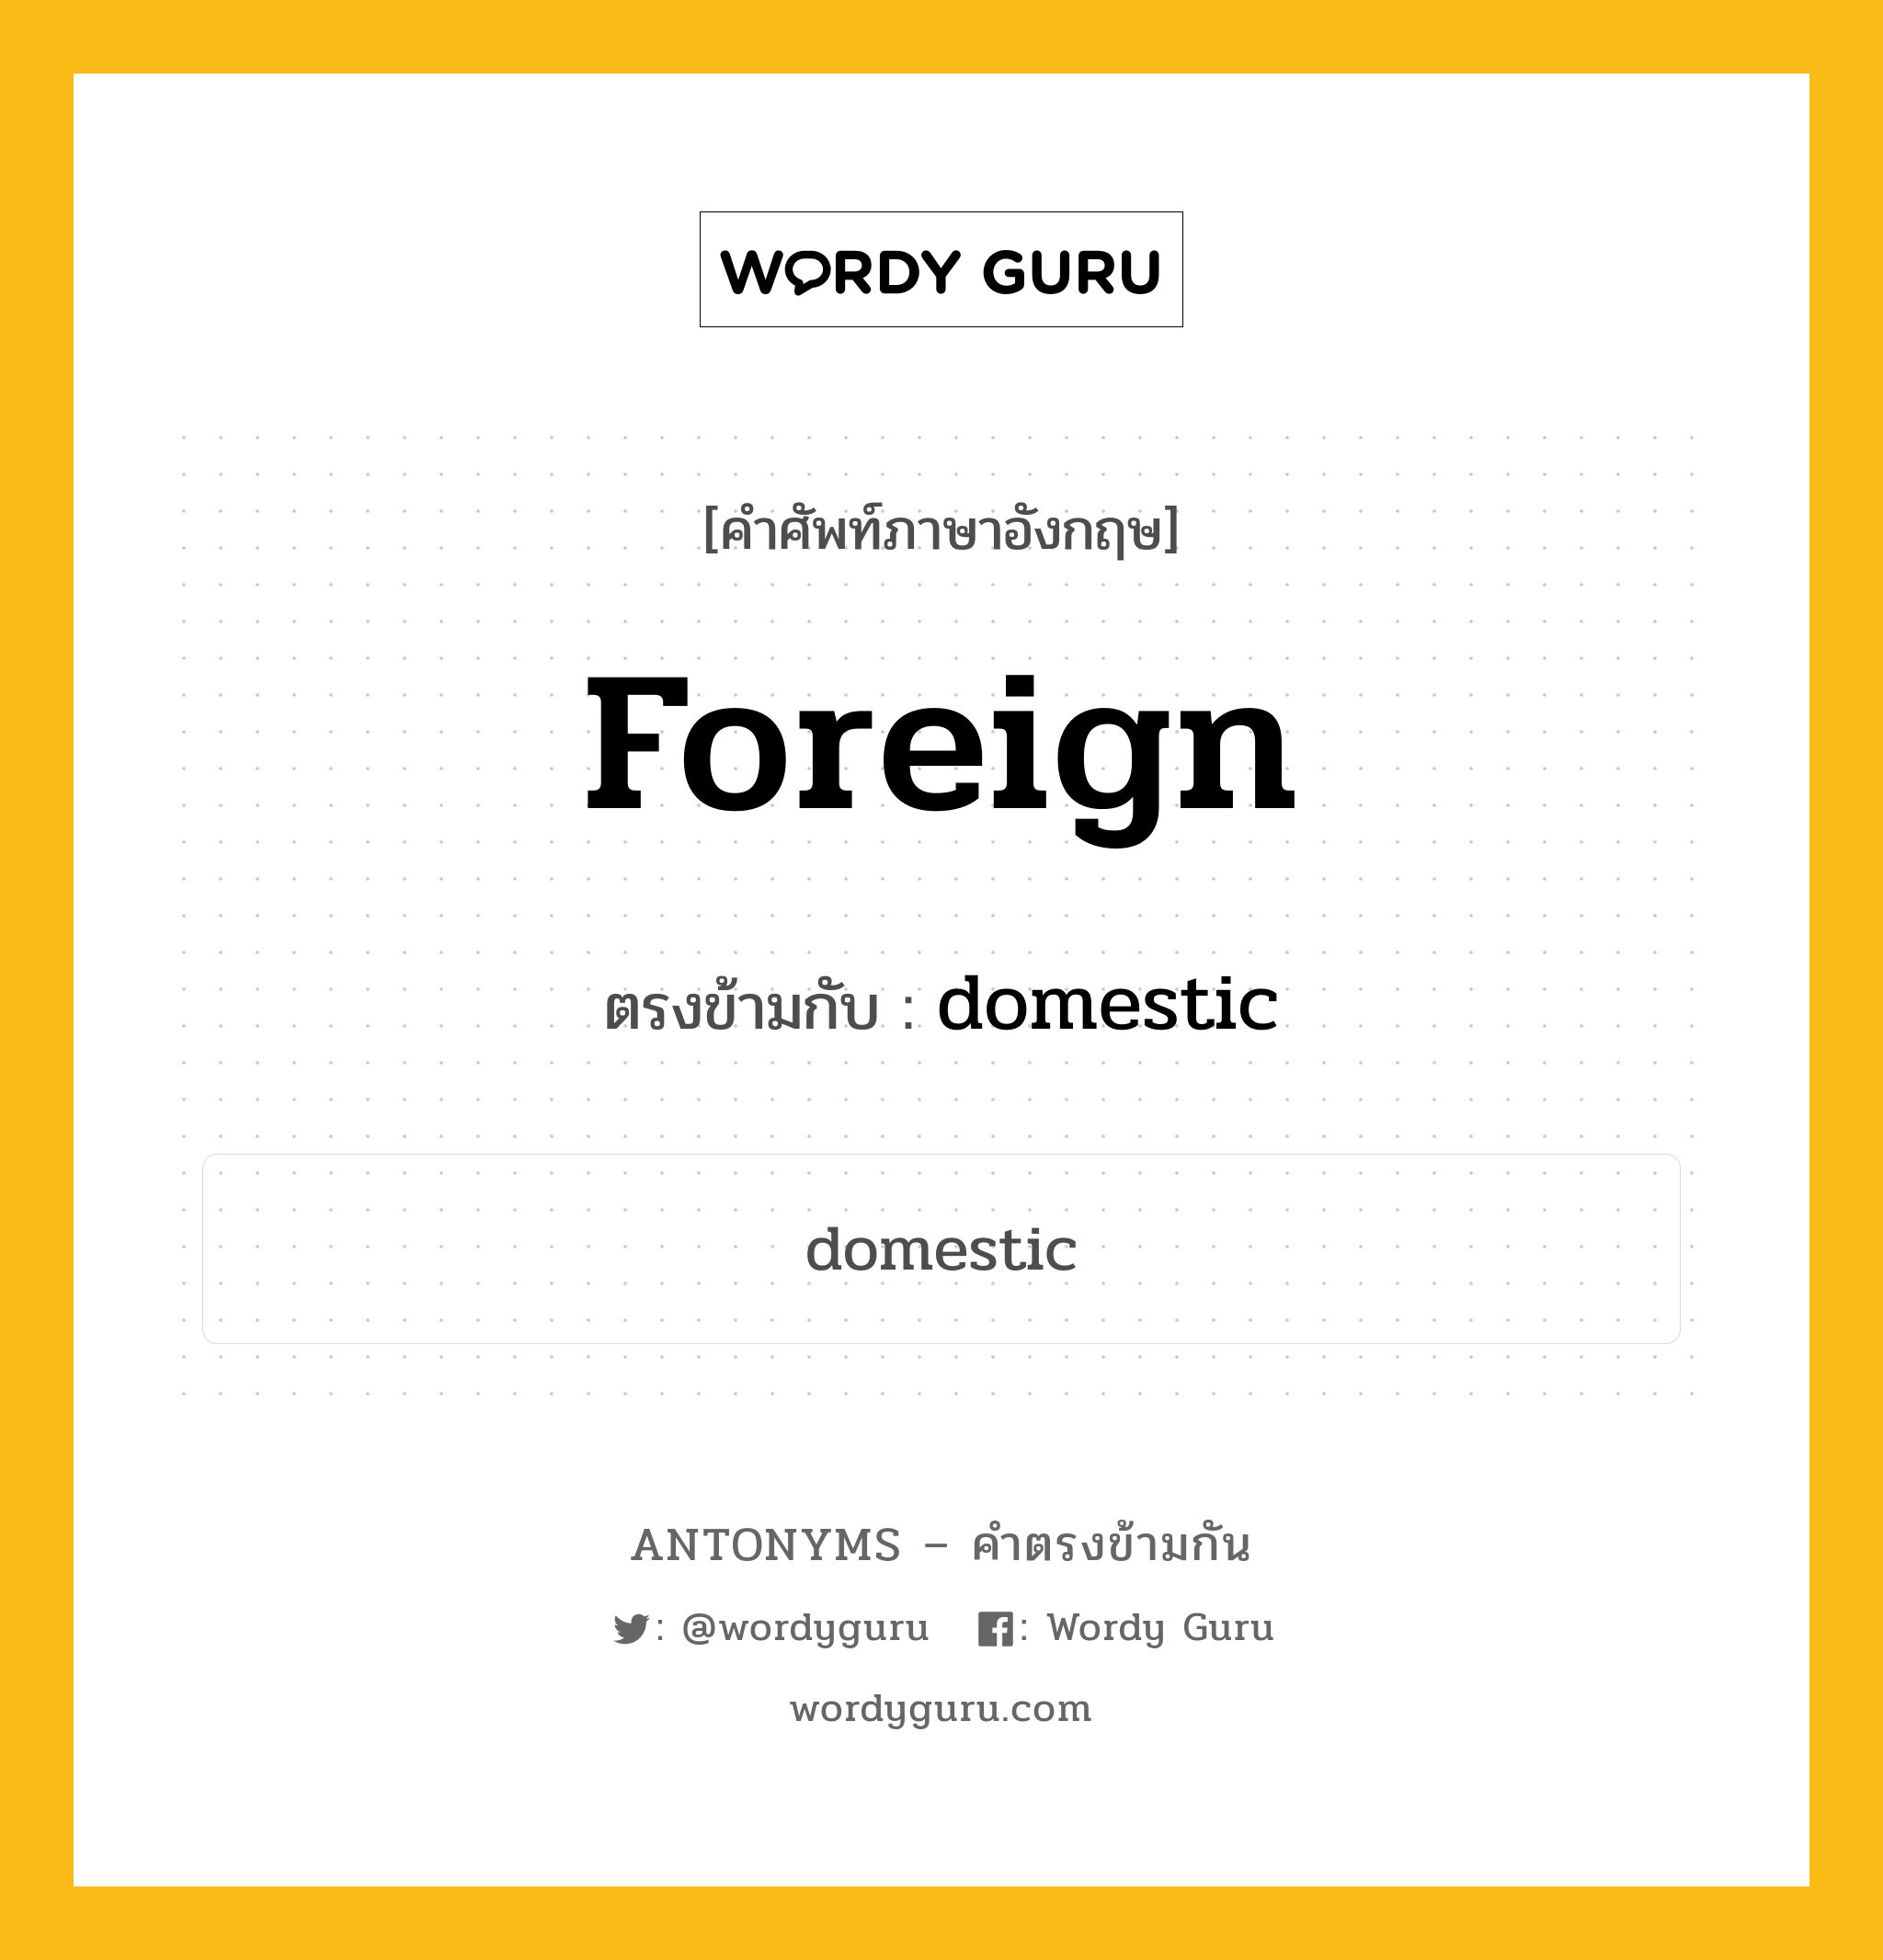 foreign เป็นคำตรงข้ามกับคำไหนบ้าง?, คำศัพท์ภาษาอังกฤษ foreign ตรงข้ามกับ domestic หมวด domestic